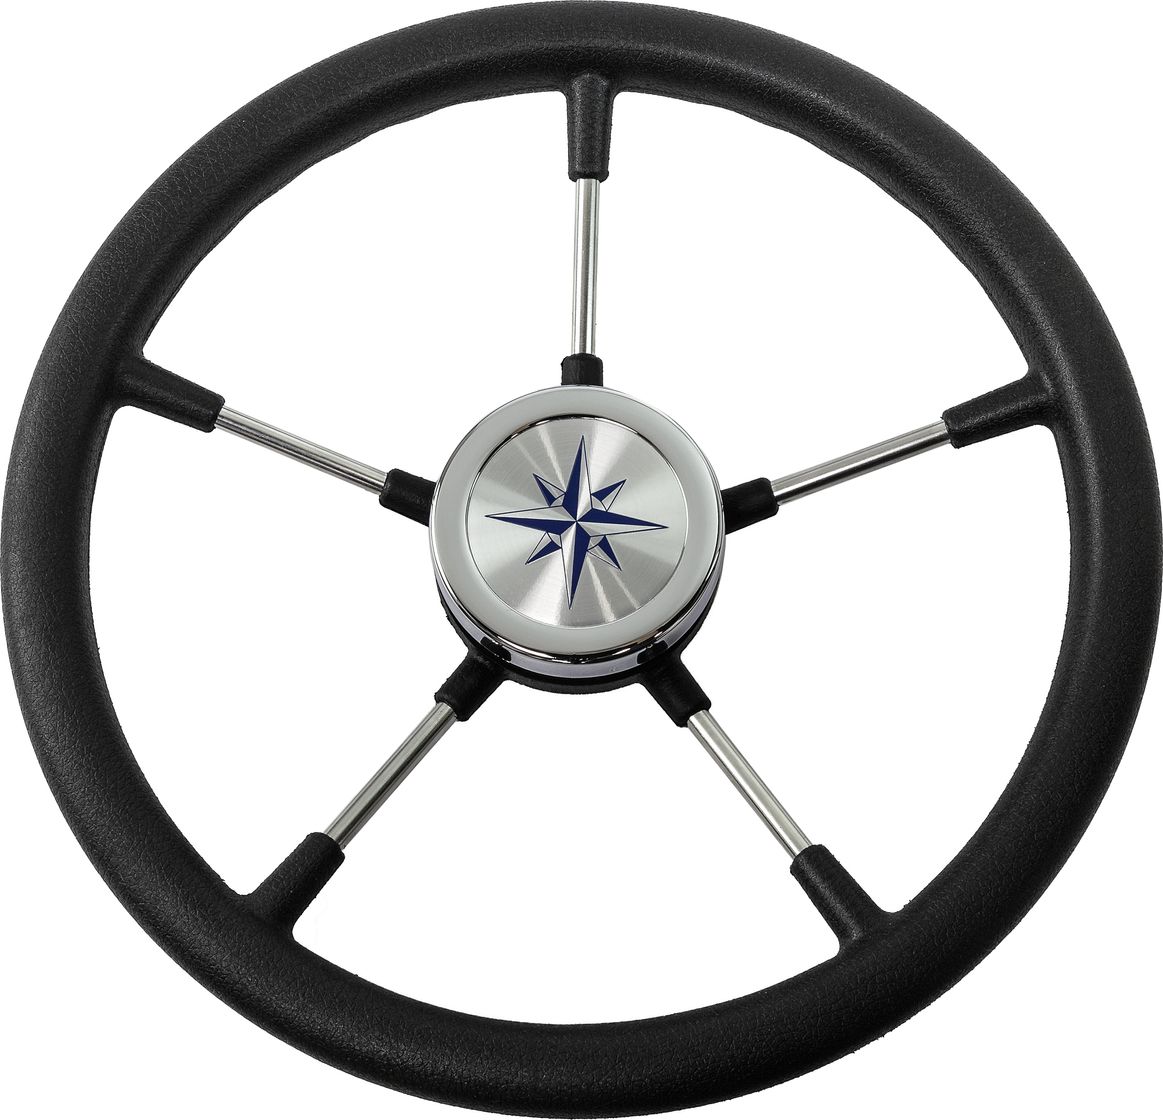 рулевое колесо leader tanegum серый обод серебряные спицы д 360 мм vn7360 03 Рулевое колесо RIVA RSL обод черный, спицы серебряные д. 360 мм VN735022-01